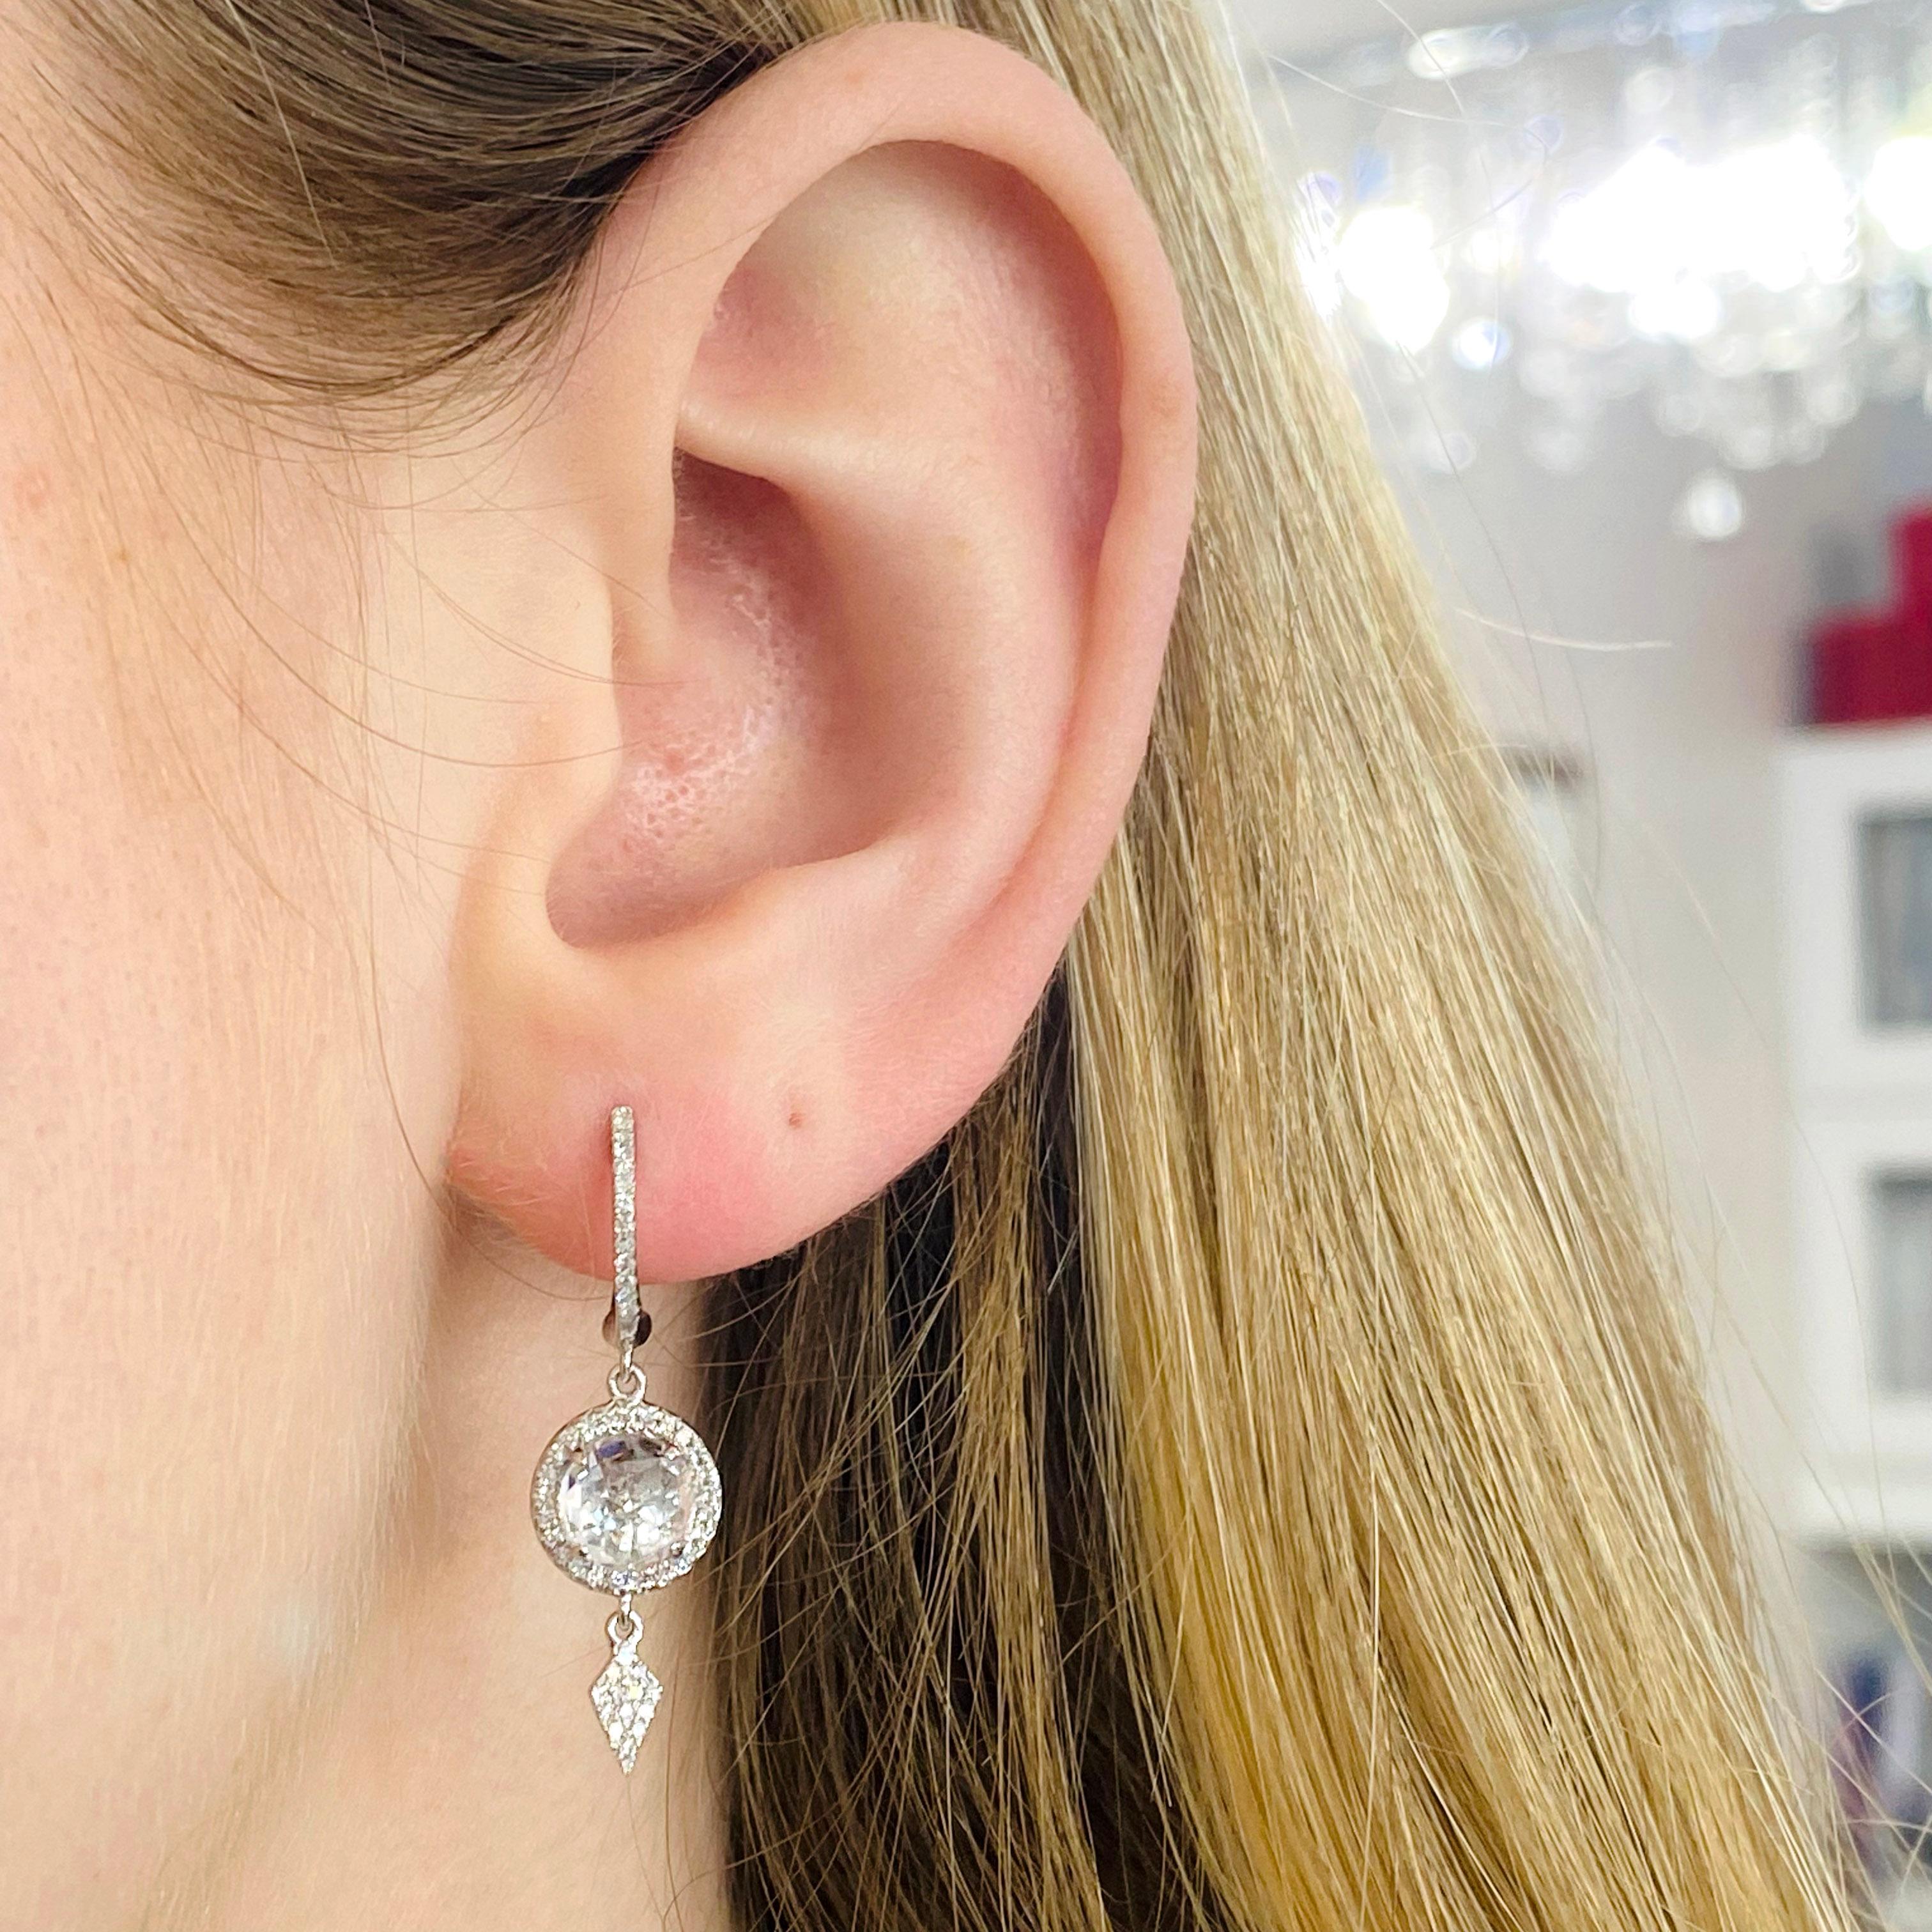 Diese diamantenen Ohrringe sind vielseitig einsetzbar, von der Jeans bis zur Abendgarderobe oder sogar als Ohrringe für Ihre Hochzeit!  Jeder Ohrring besteht aus 3 Teilen, so dass er sich bewegt, wenn Sie Ihren Kopf und Körper bewegen. Diese